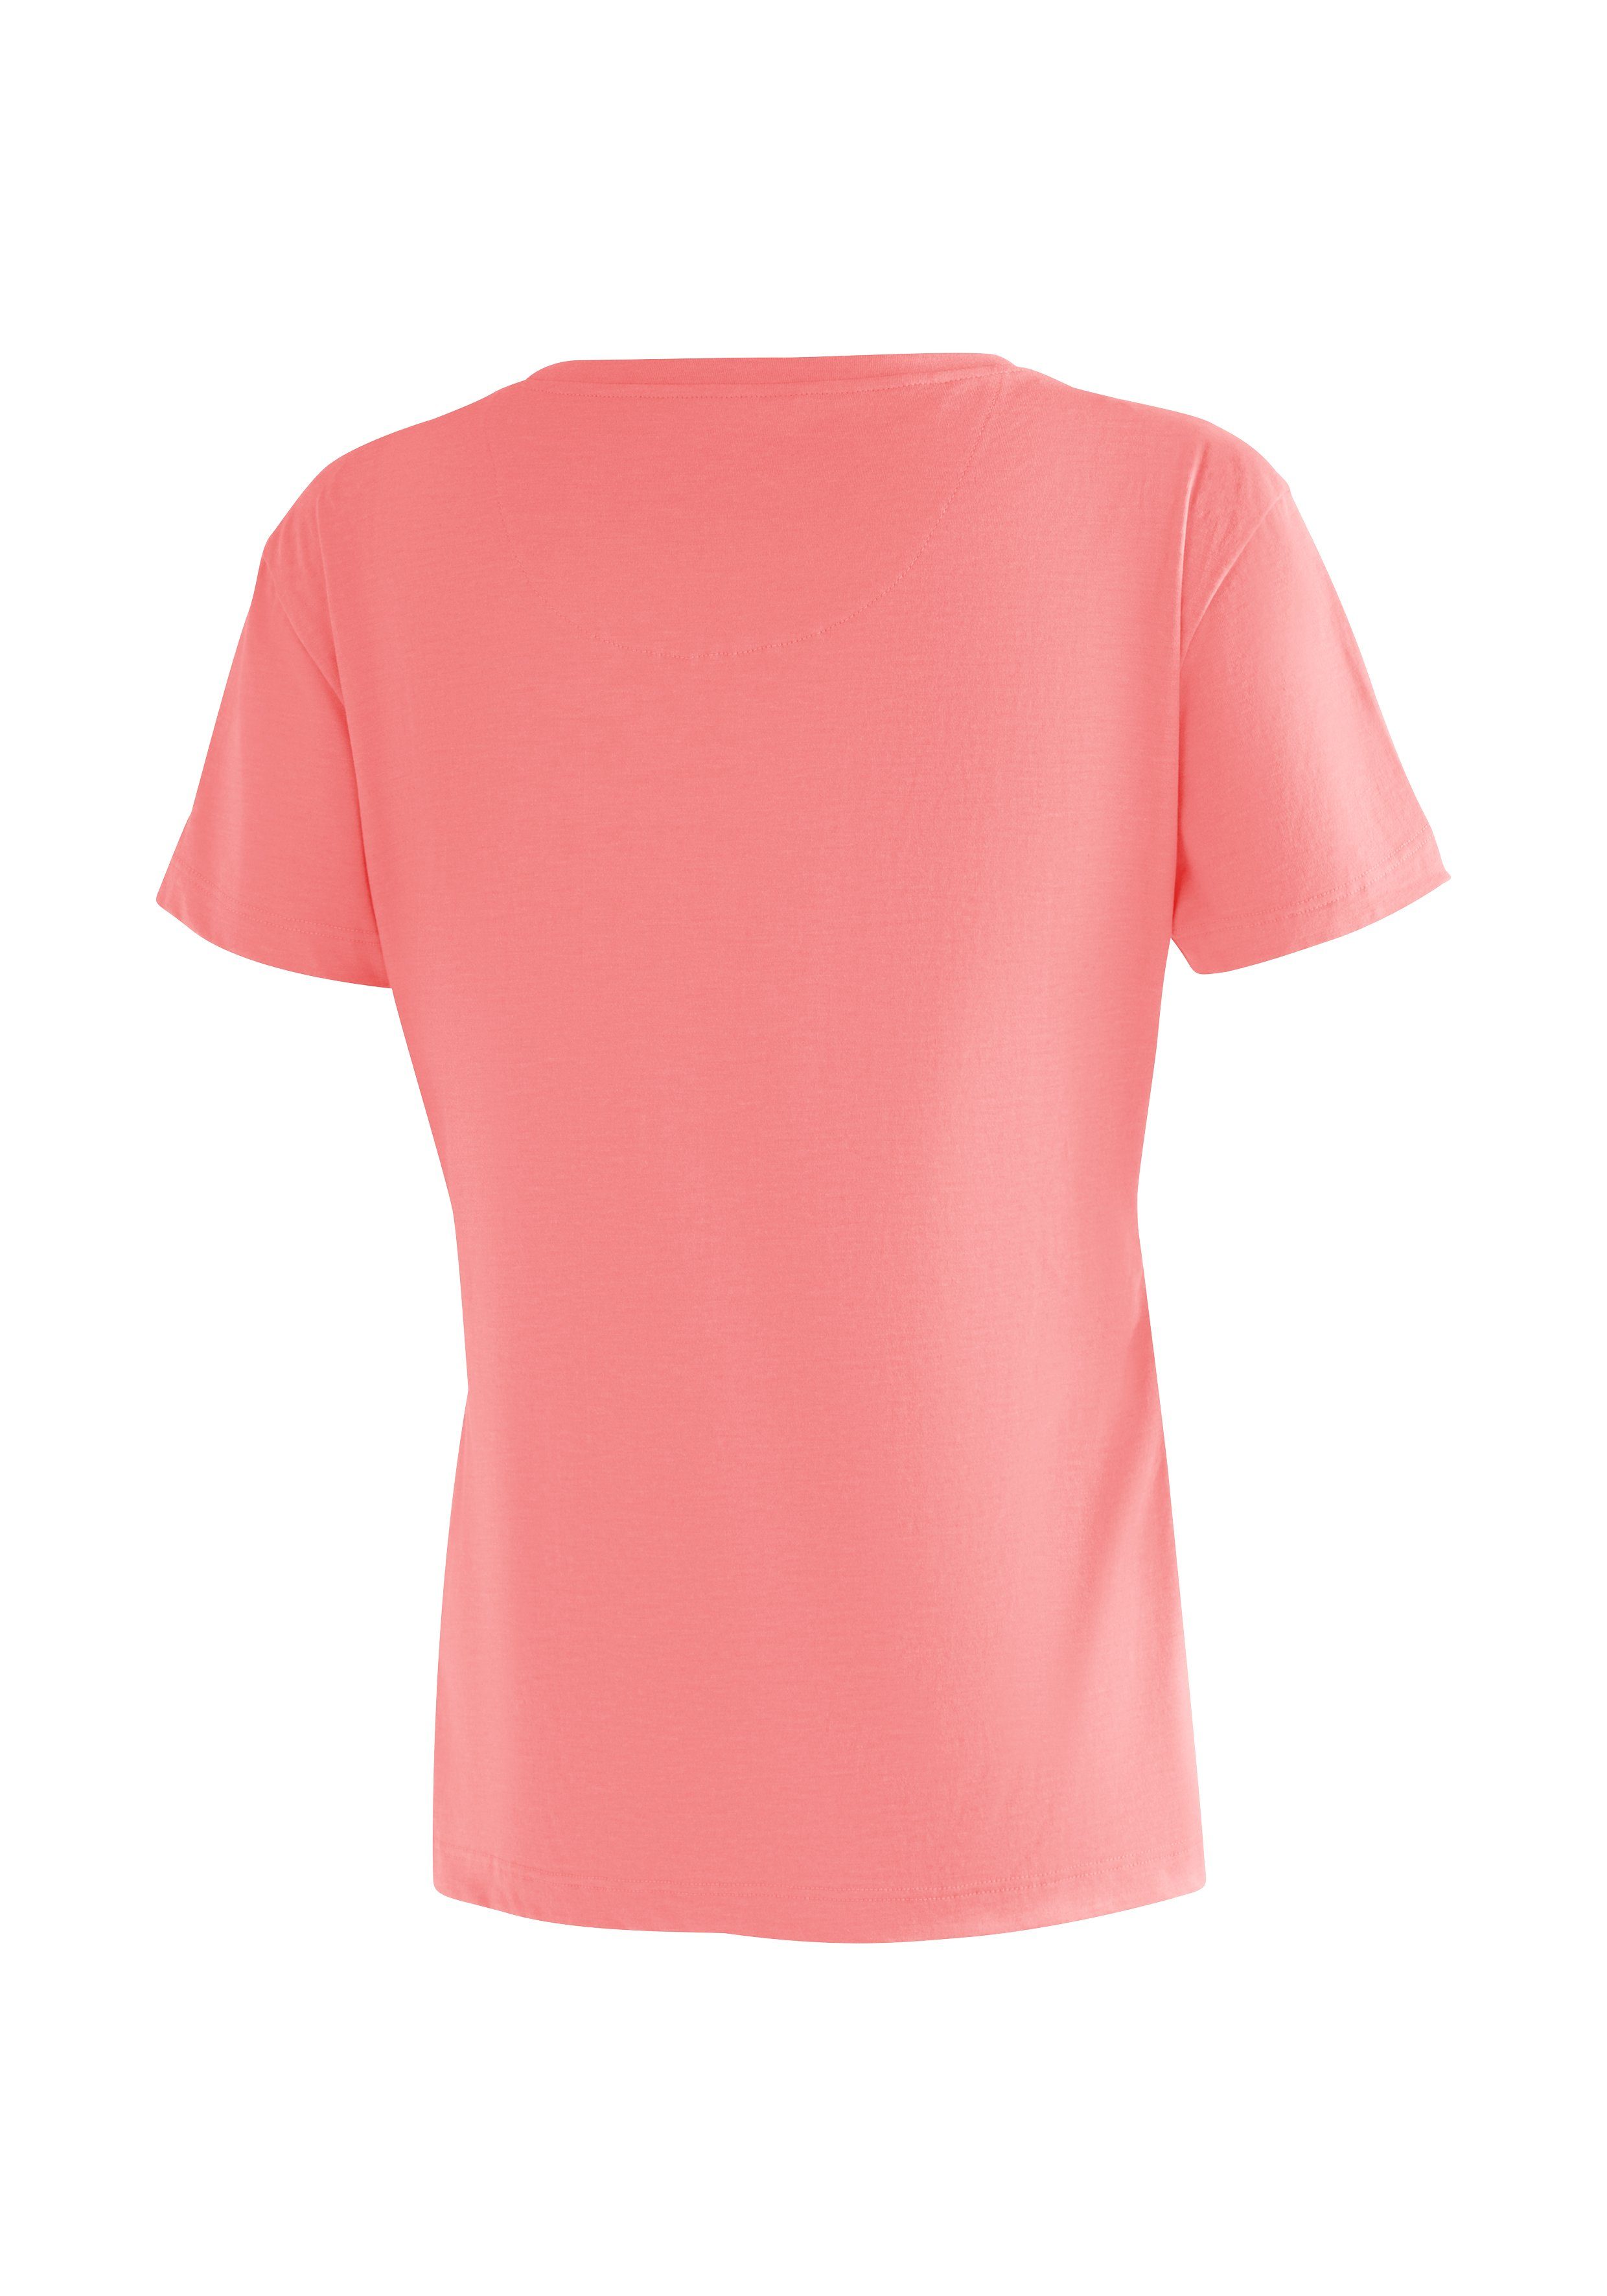 Freizeit Kurzarmshirt für mit und Sports W Print perlrosa Maier Damen Tee Wandern Phonetic T-Shirt